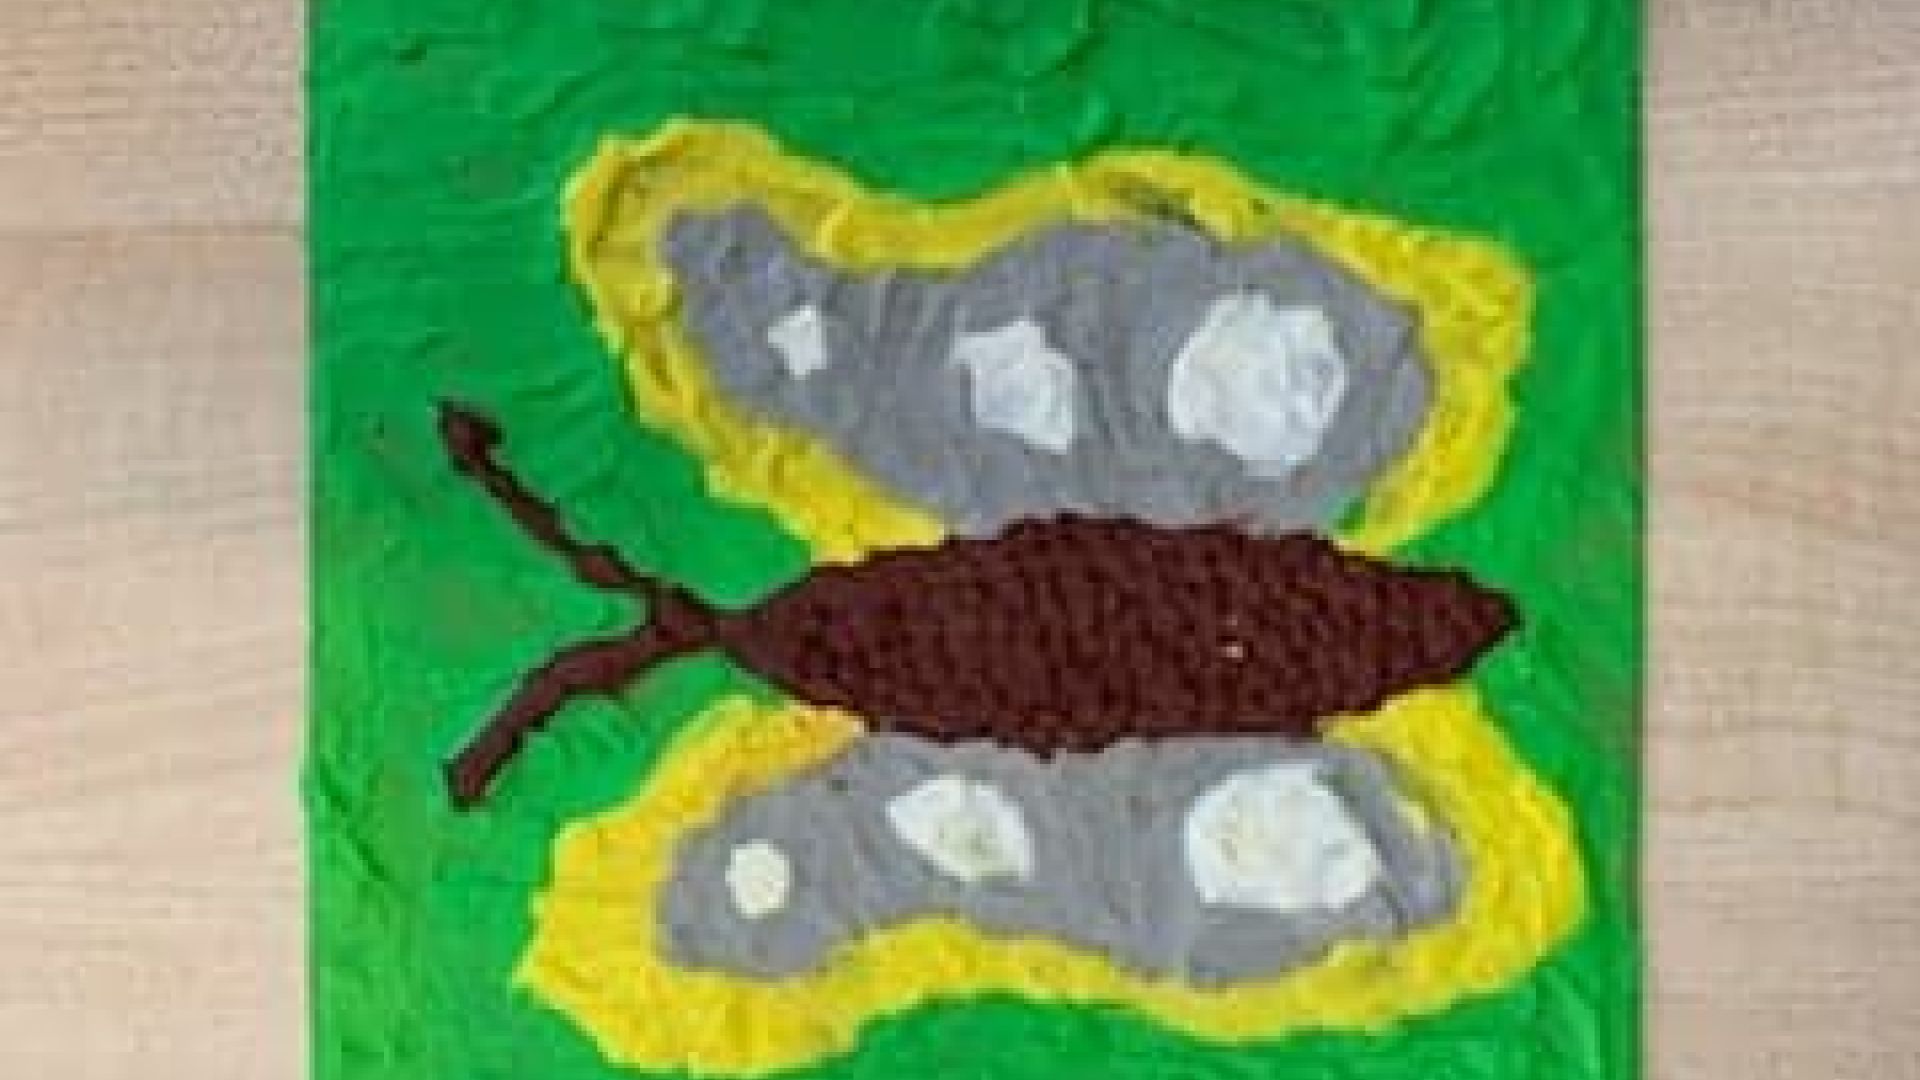 Praca wyklejona z plasteliny przedstawiająca brązowo-żółto-szaro-białym motylem na zielonym tle. Autor: Grzegorz S.